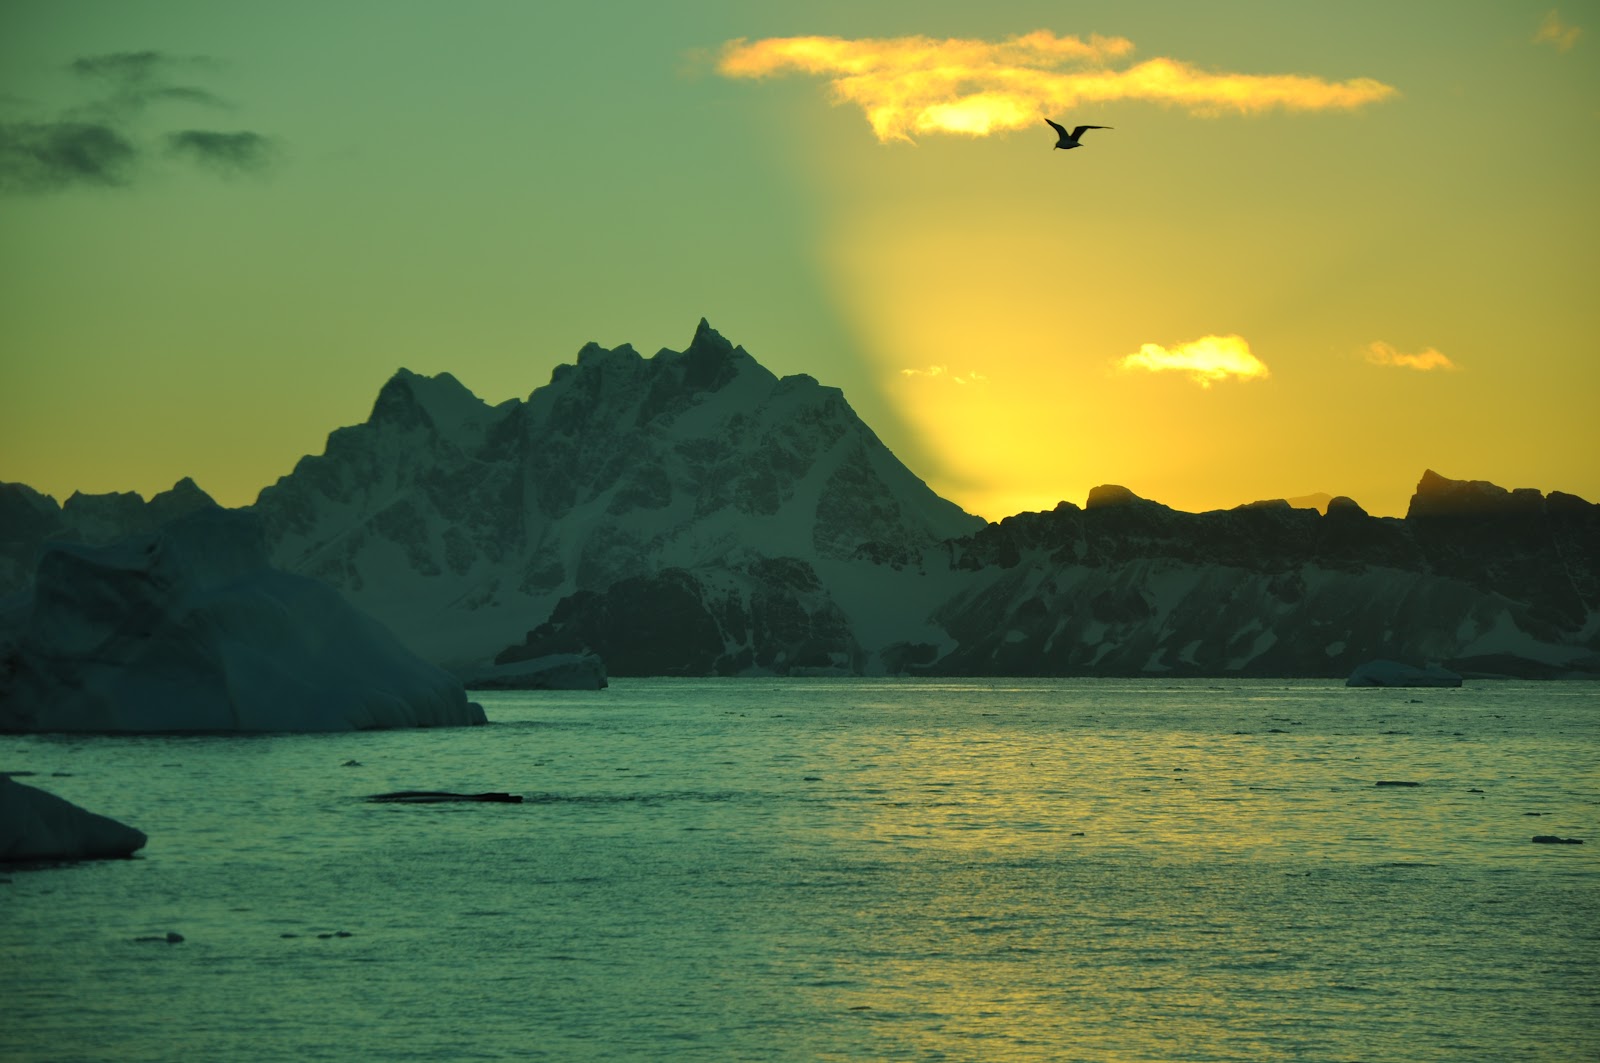 Antarctic Sunrise